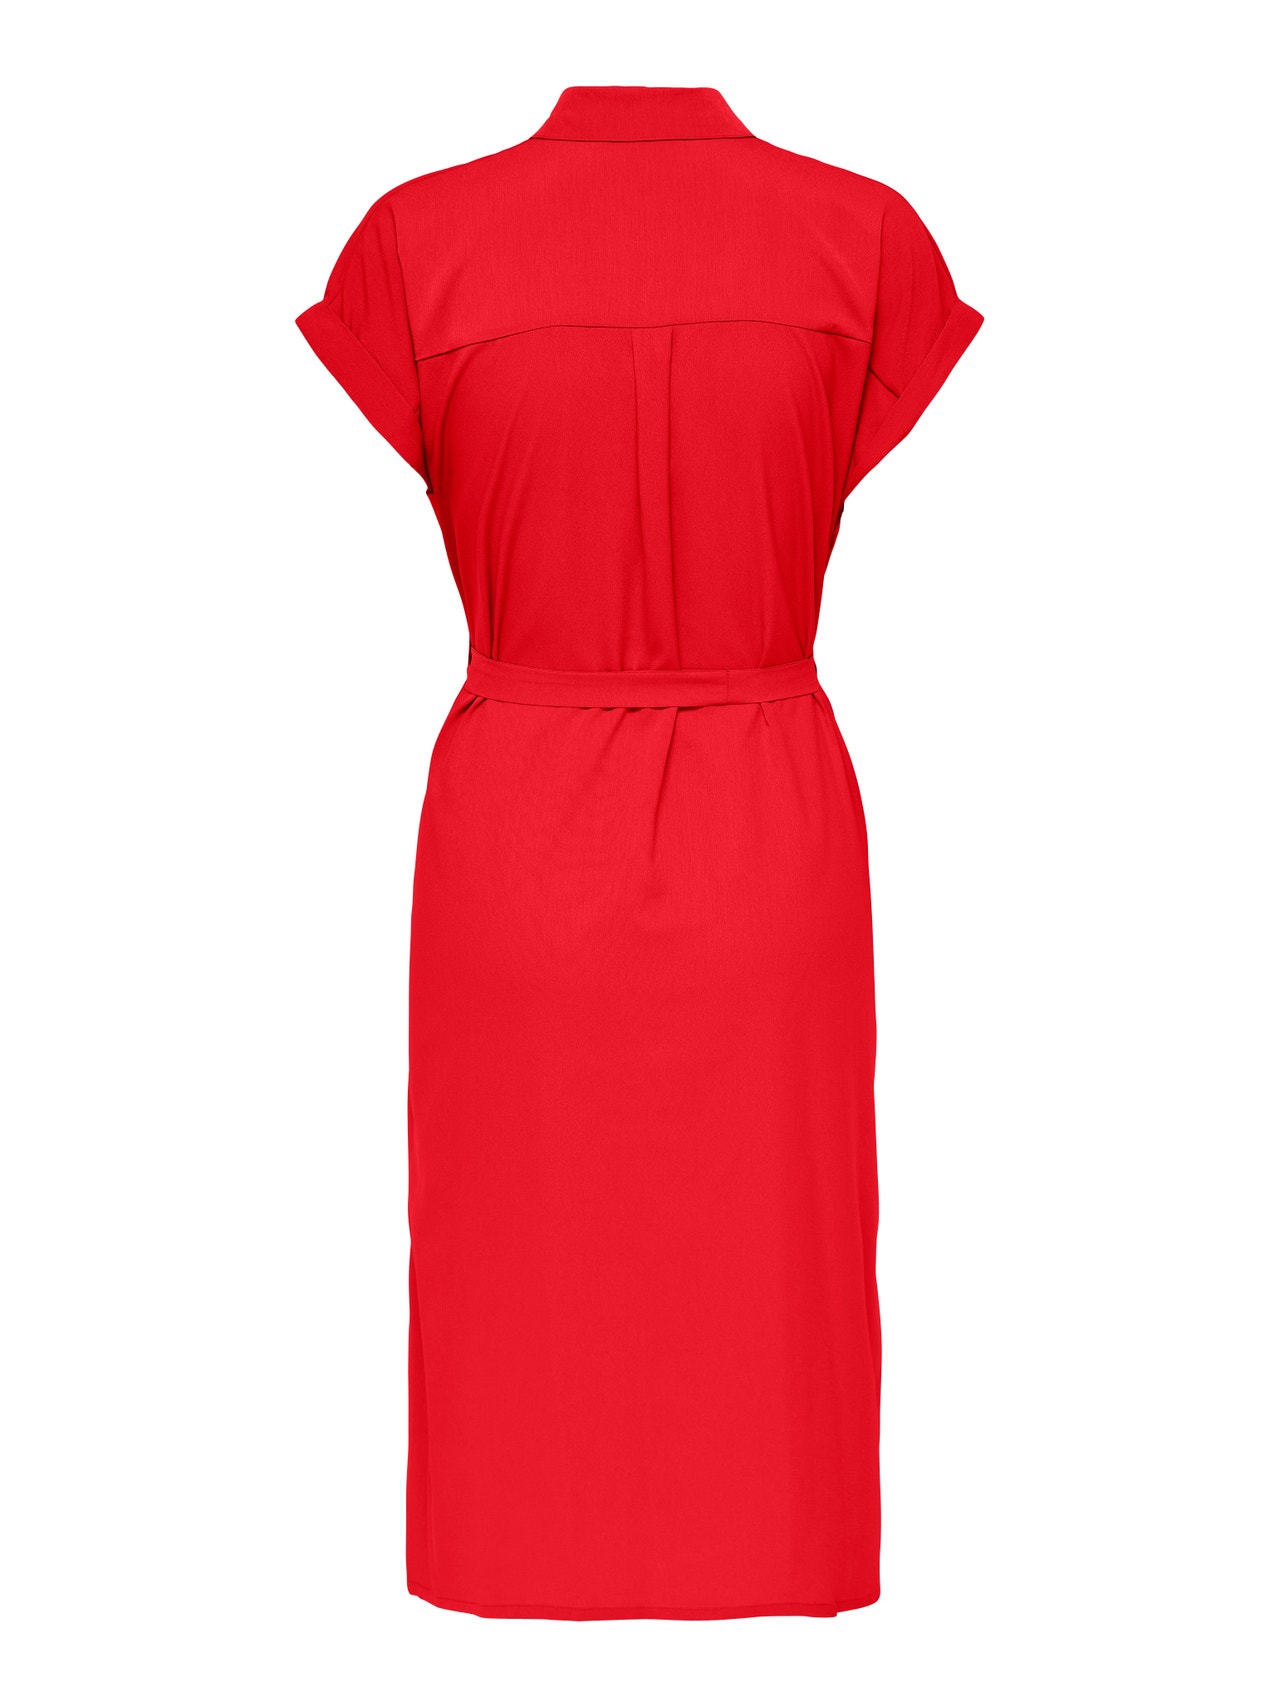 ONLY Normal geschnitten Hemdkragen Umgeschlagene Ärmelbündchen Langes Kleid -High Risk Red - 15191953